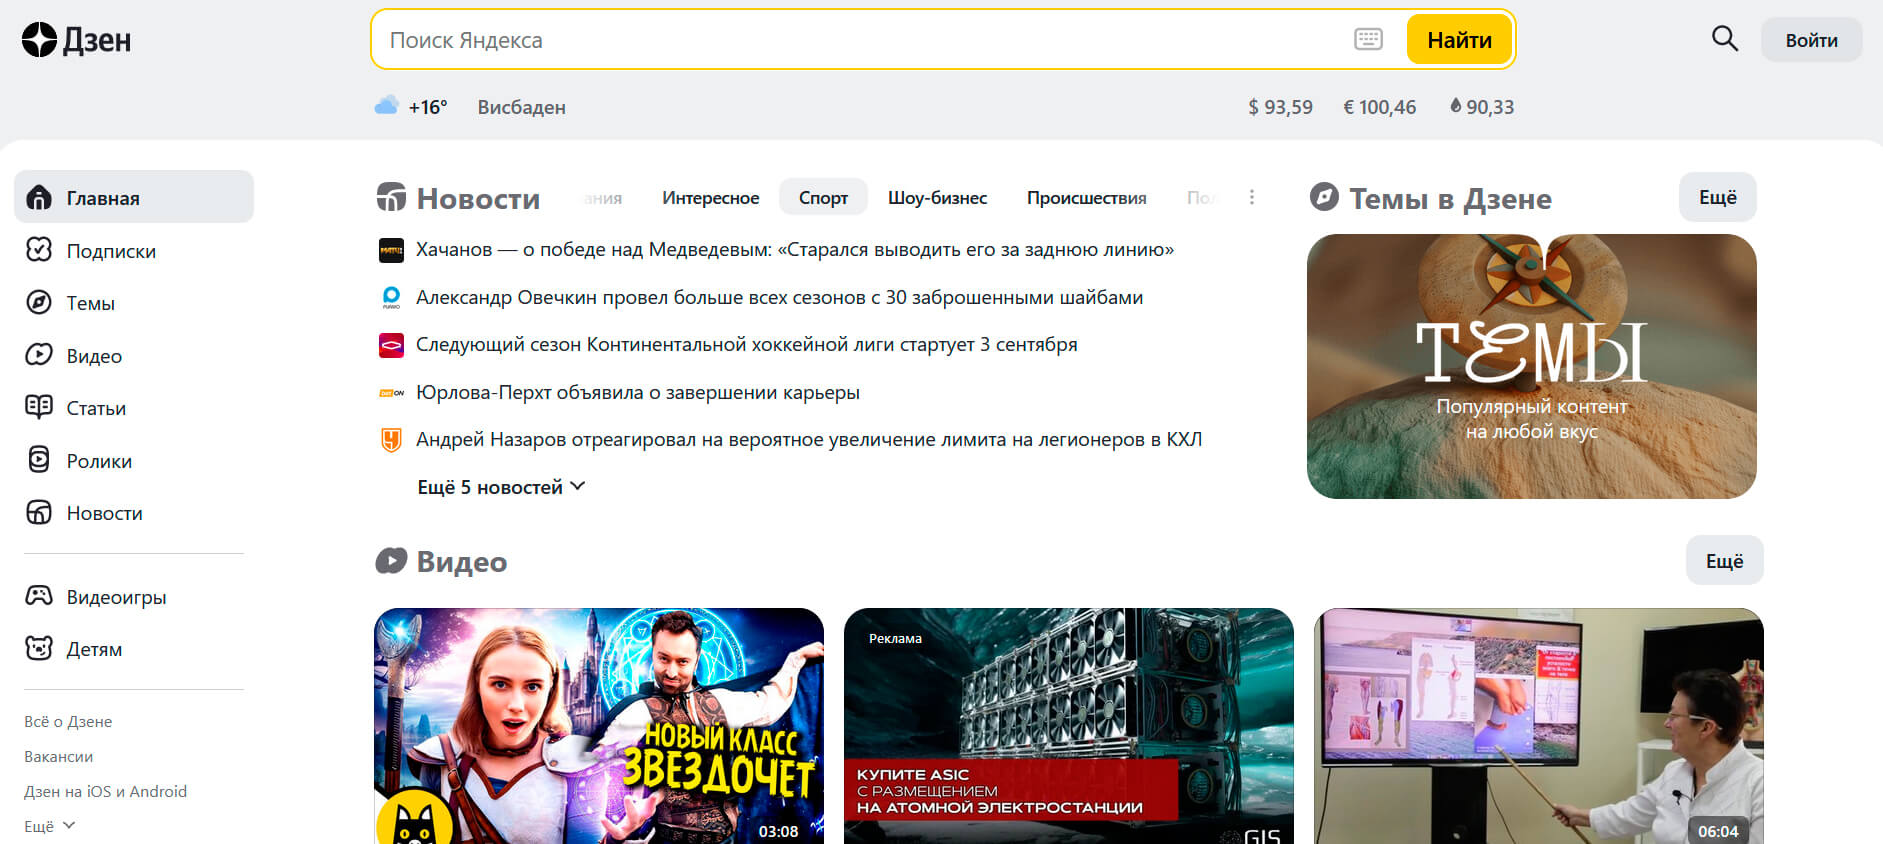 Яндекс.Дзен скриншот (фото)